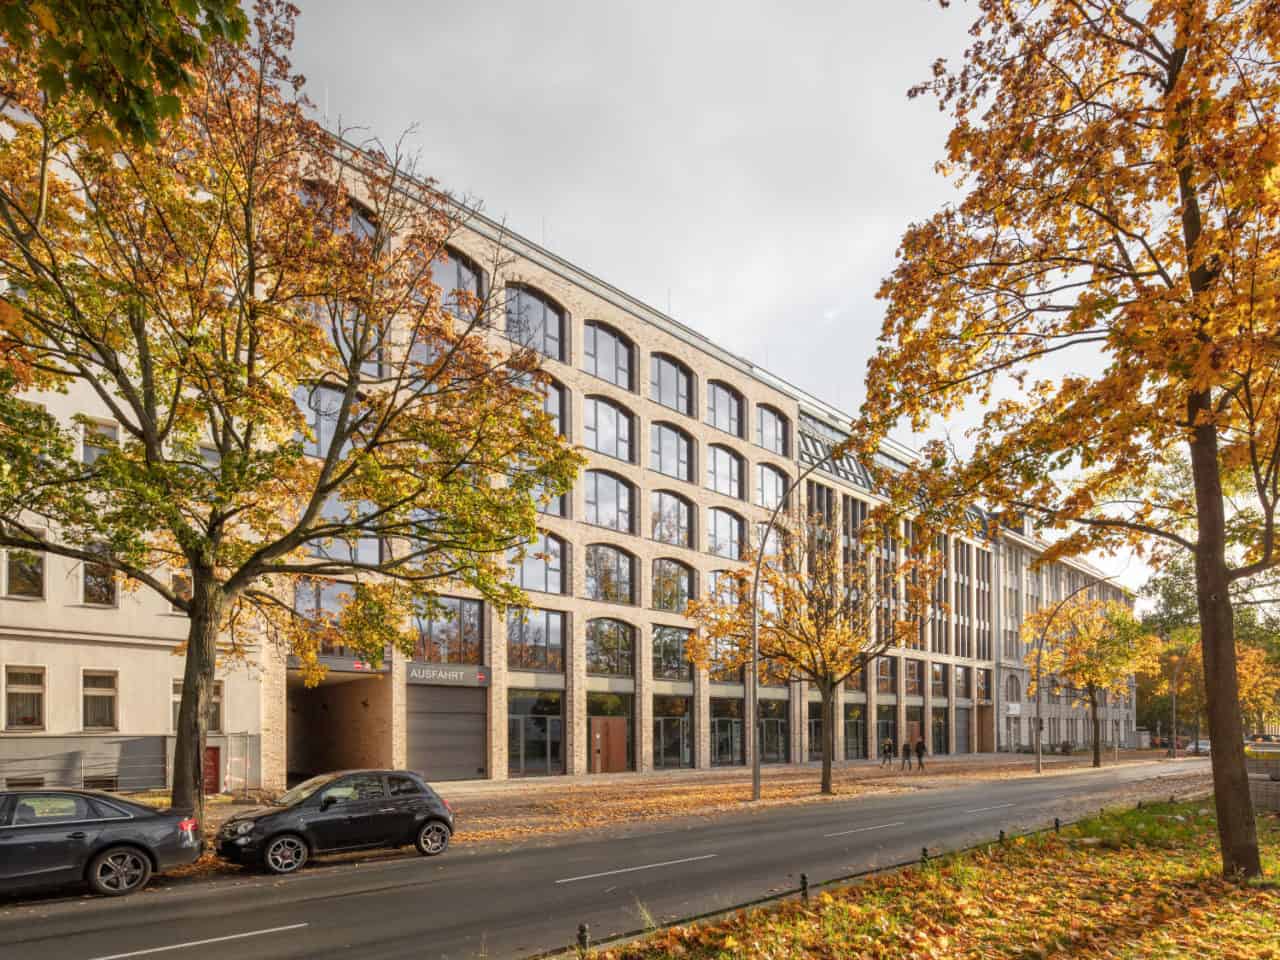 Seestrasse - Two Office Buildings in Berlin by Tchoban Voss Architekten